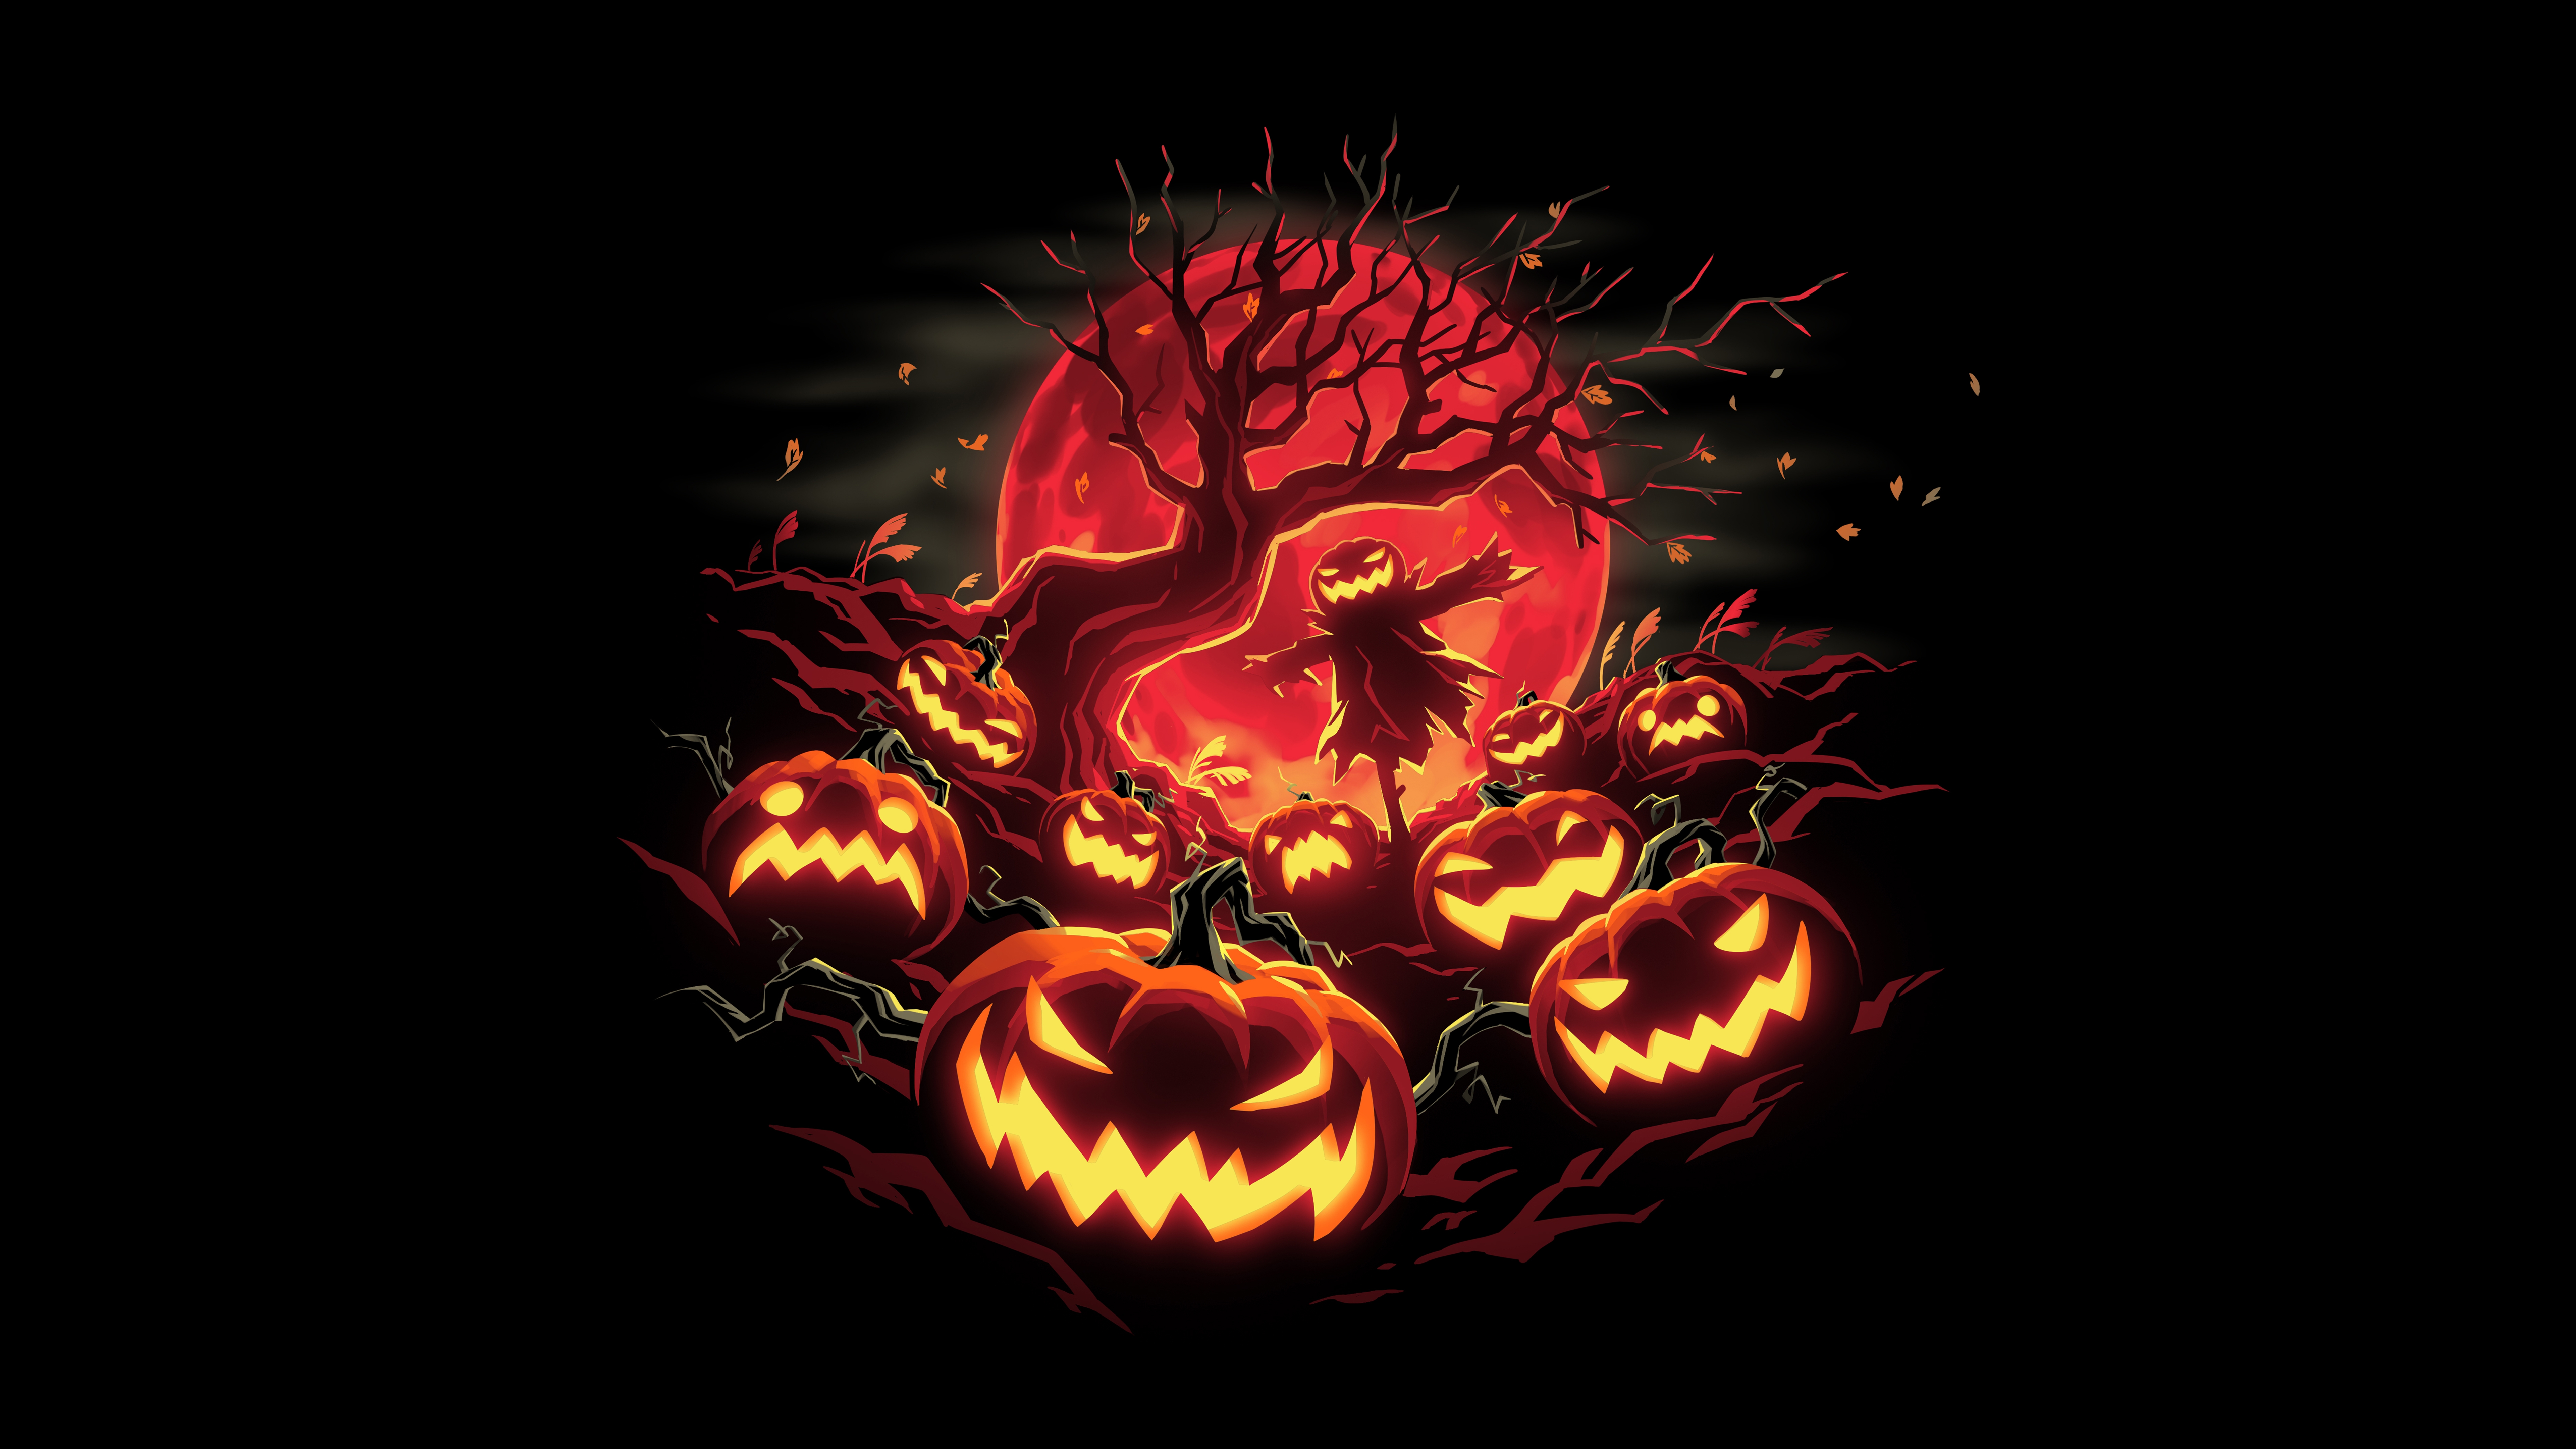 HD wallpaper, Halloween Pumpkins, Black Background, 5K, 8K, Haunted, Scarecrow